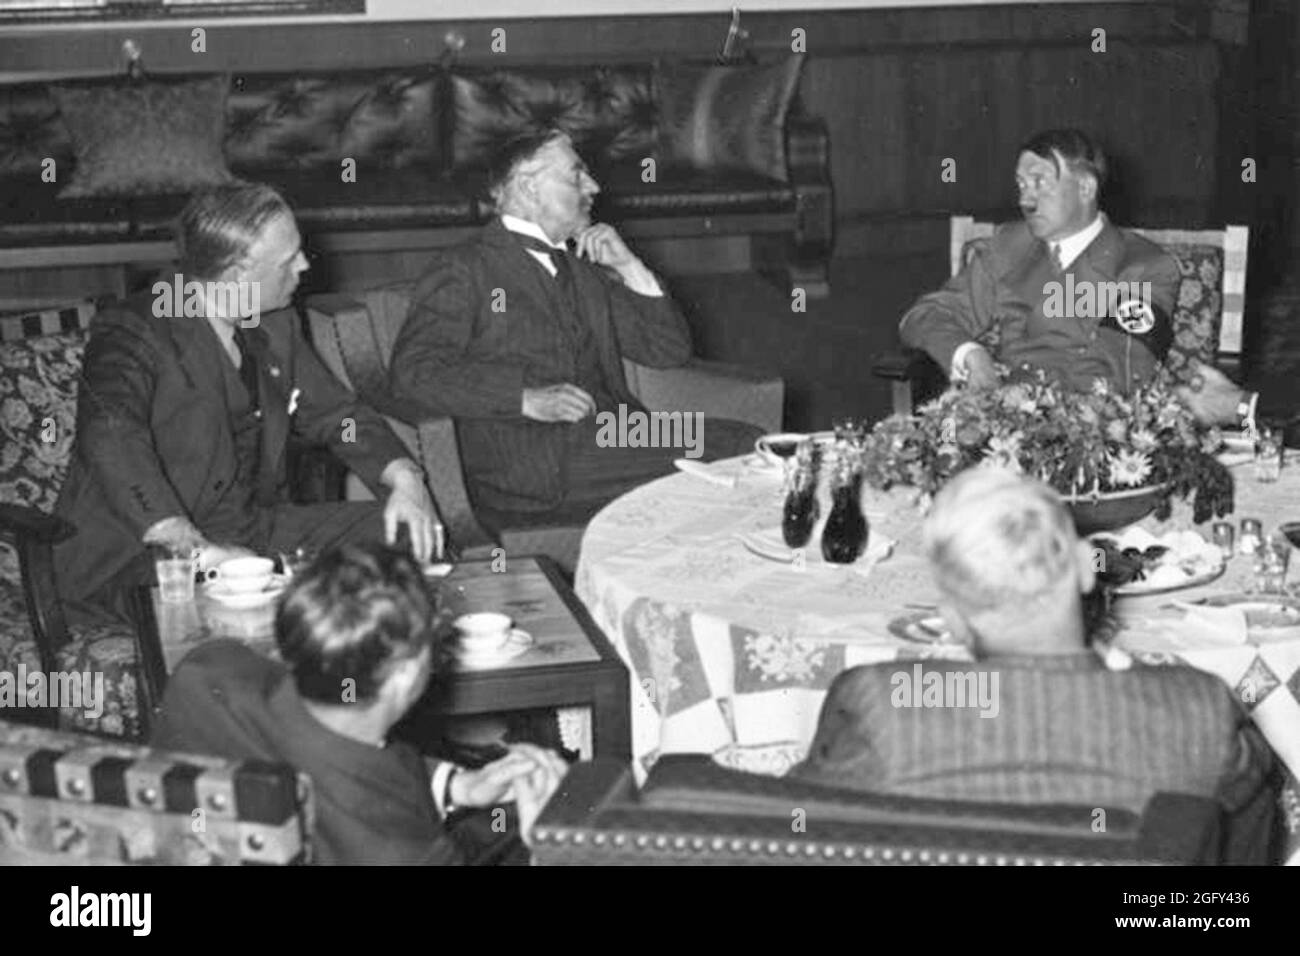 Le Premier ministre britannique Neville Chamberlain lors de la conférence de Munich le 29 septembre. 1938. Neville Henderson parle avec Joachim von Ribbentrop (ministre des Affaires étrangères de l'Allemagne nazie) et Adolf Hitler. Crédit : Bundesarchiv allemand Banque D'Images